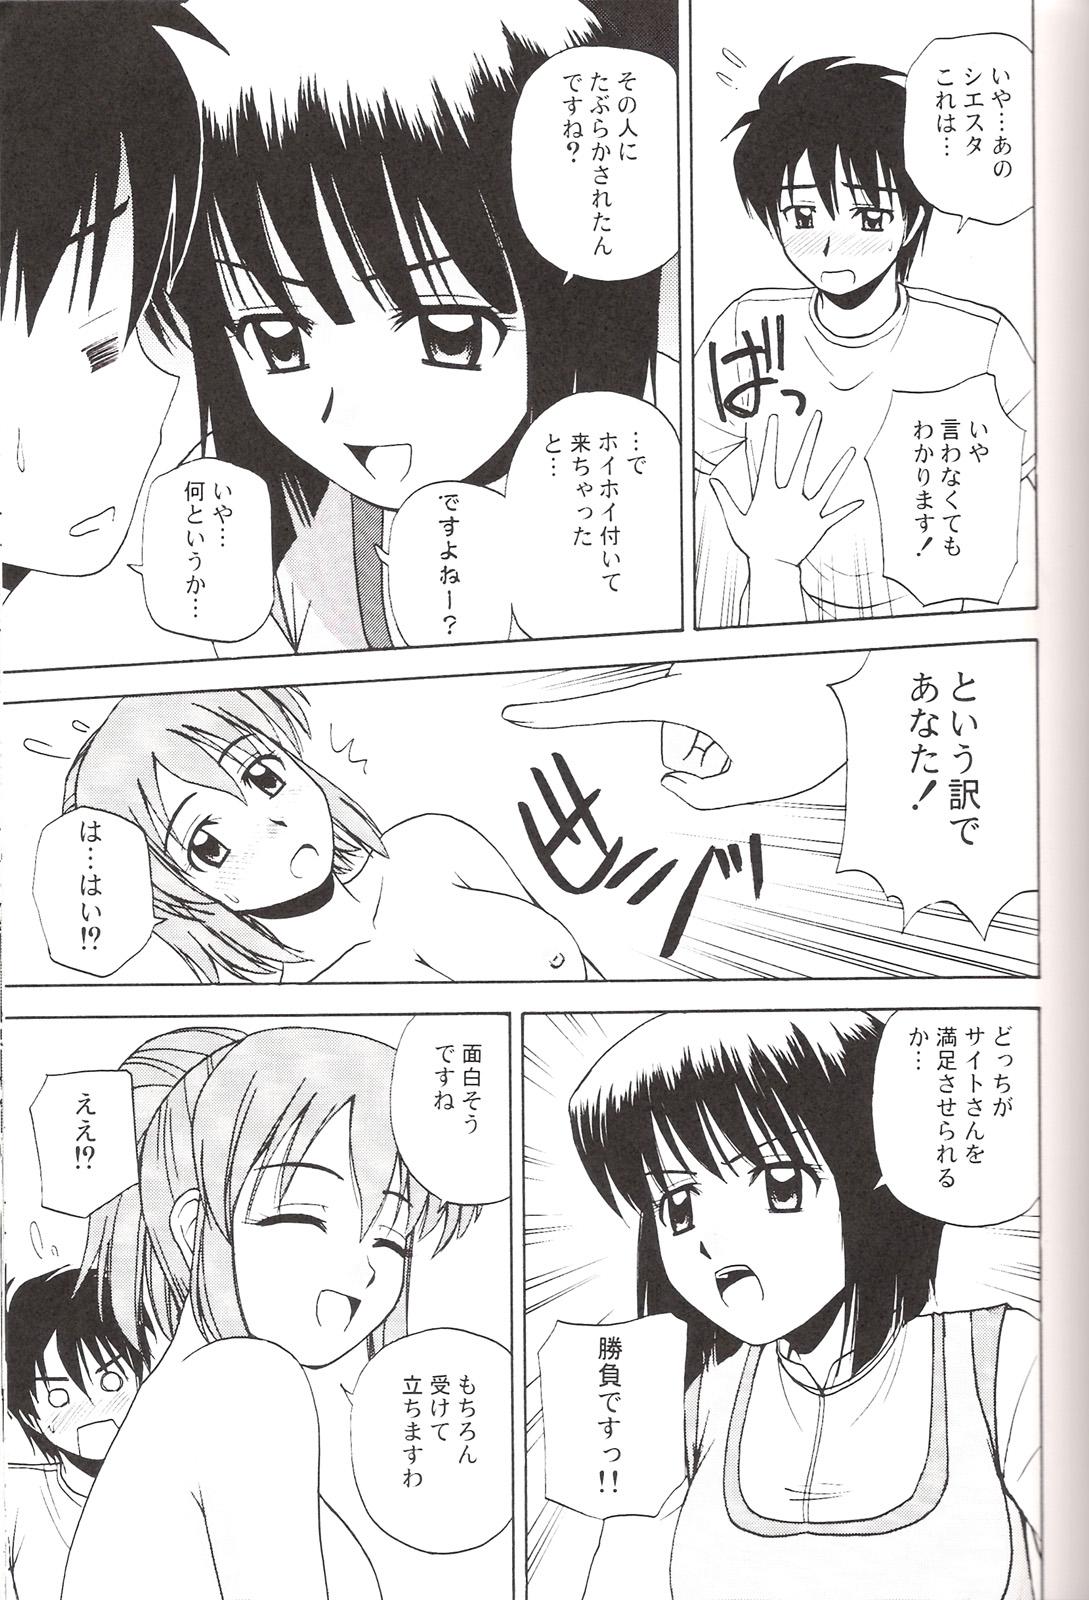 Hot Girl Le beau maitre 3 - Zero no tsukaima 18yo - Page 12